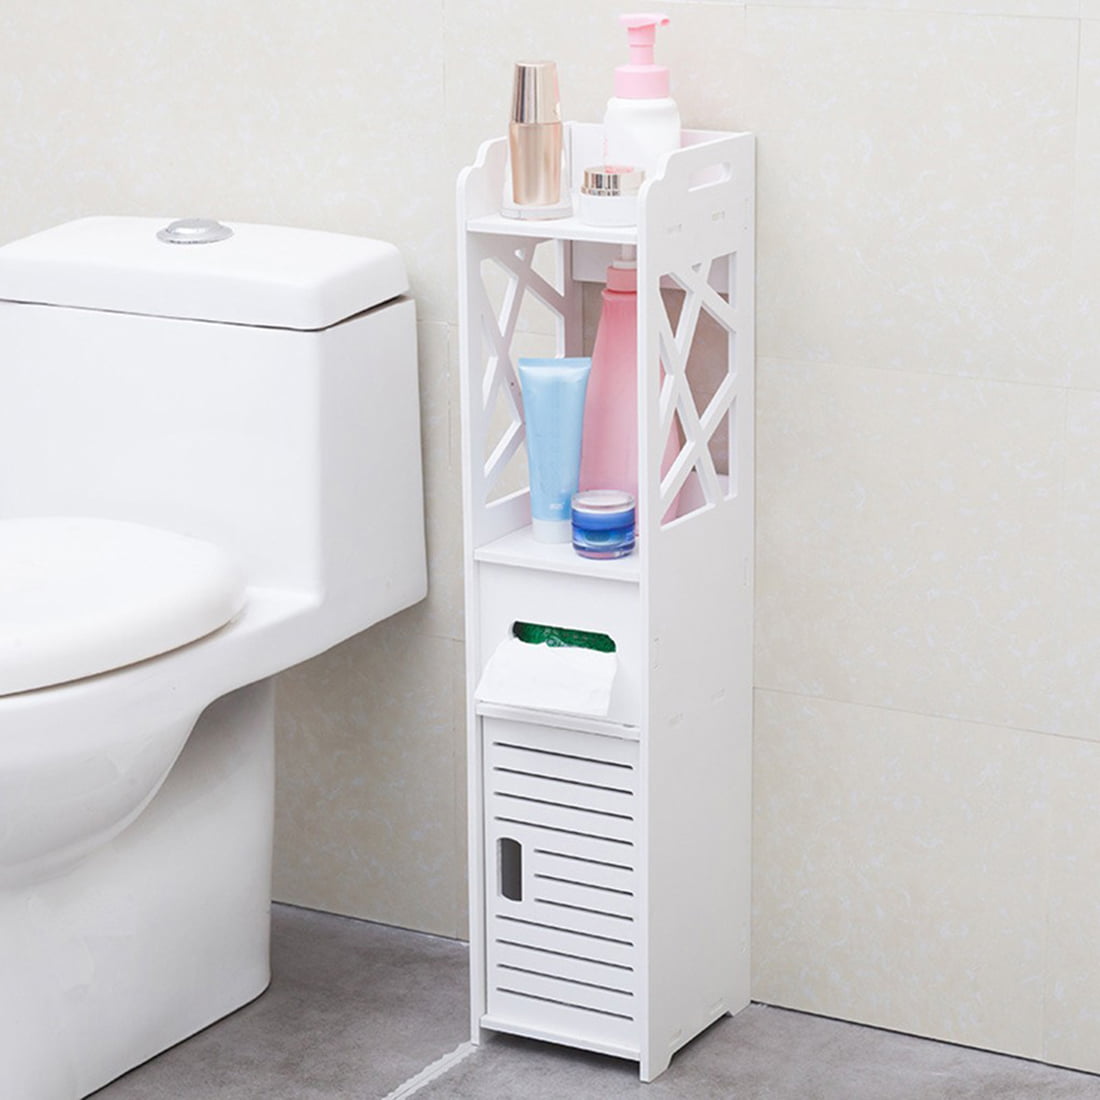 Details about   Bathroom Floor Corner Cabinet Toilet Paper Storage Holder Organizer Shelf White 